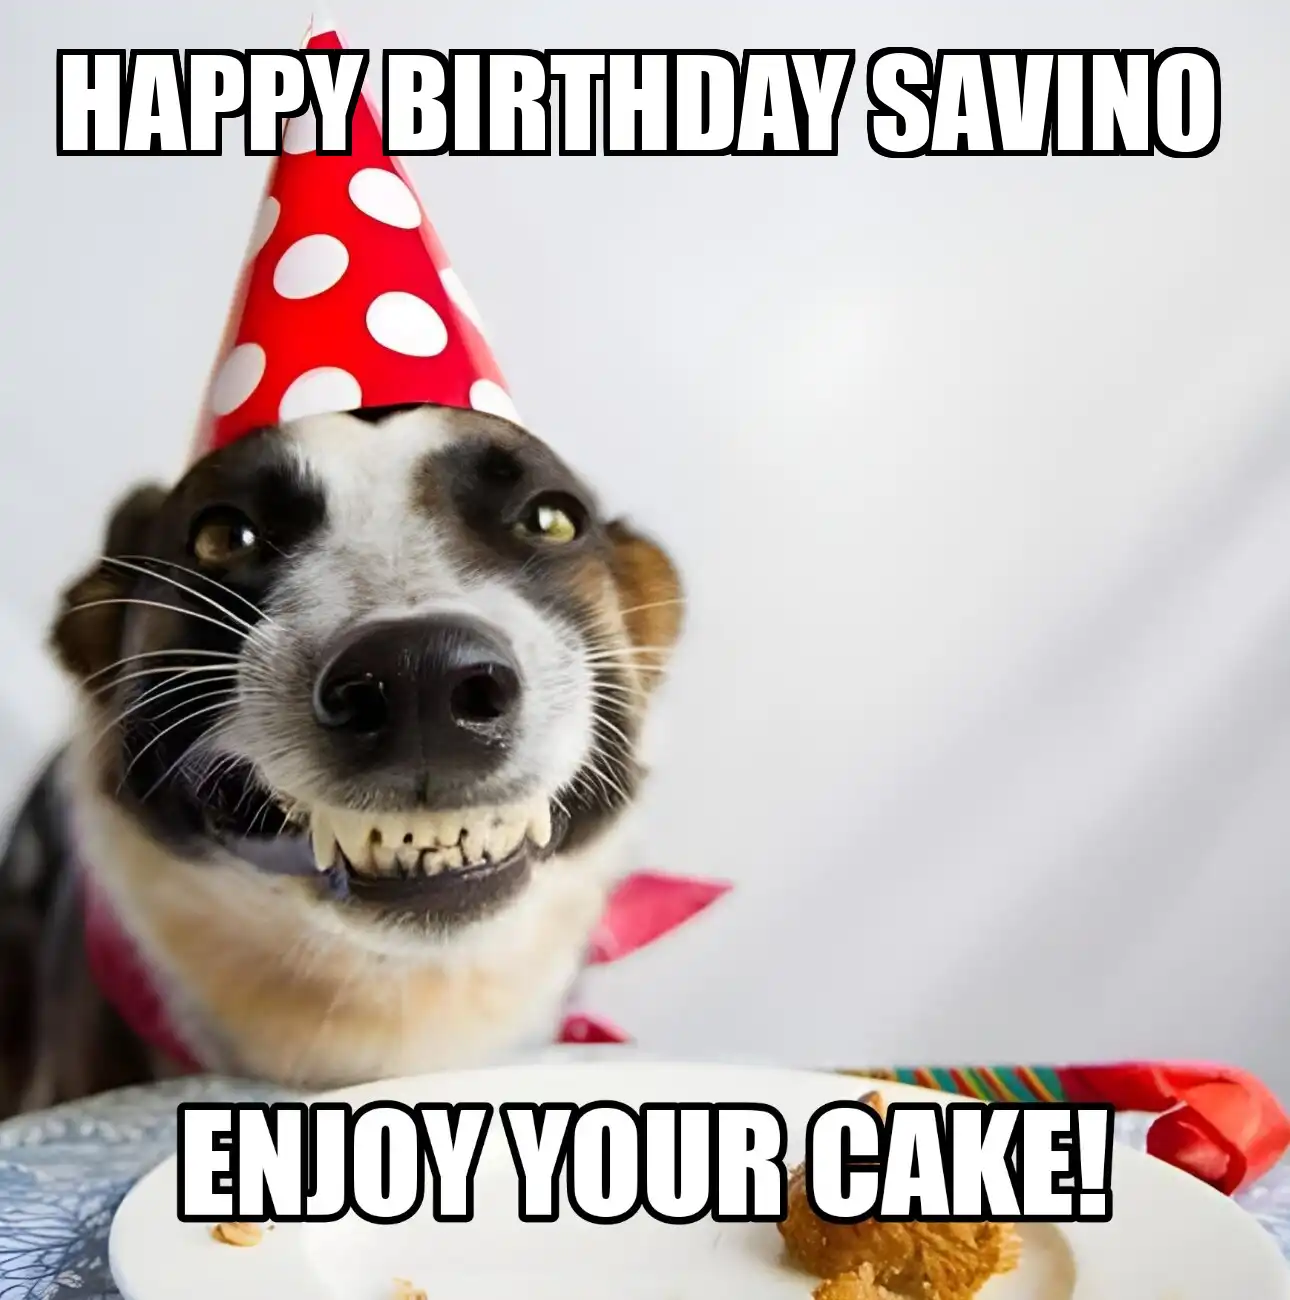 Happy Birthday Savino Enjoy Your Cake Dog Meme